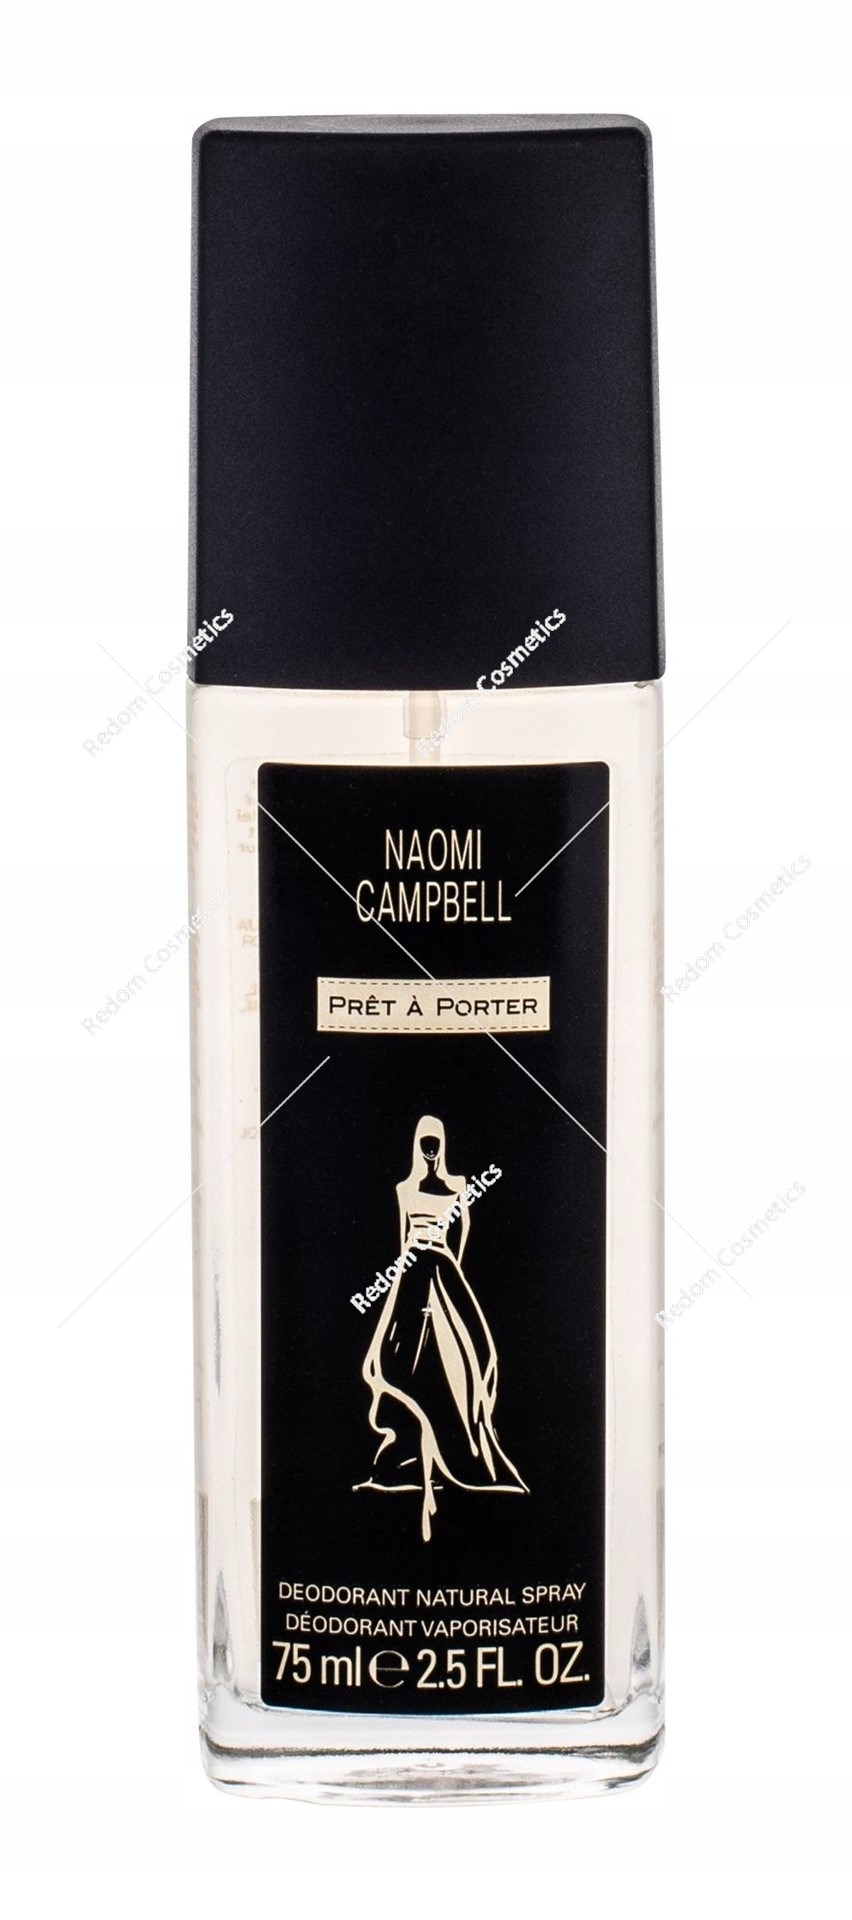 Naomi Campbell Pret a Porter dezodorant 75 ml